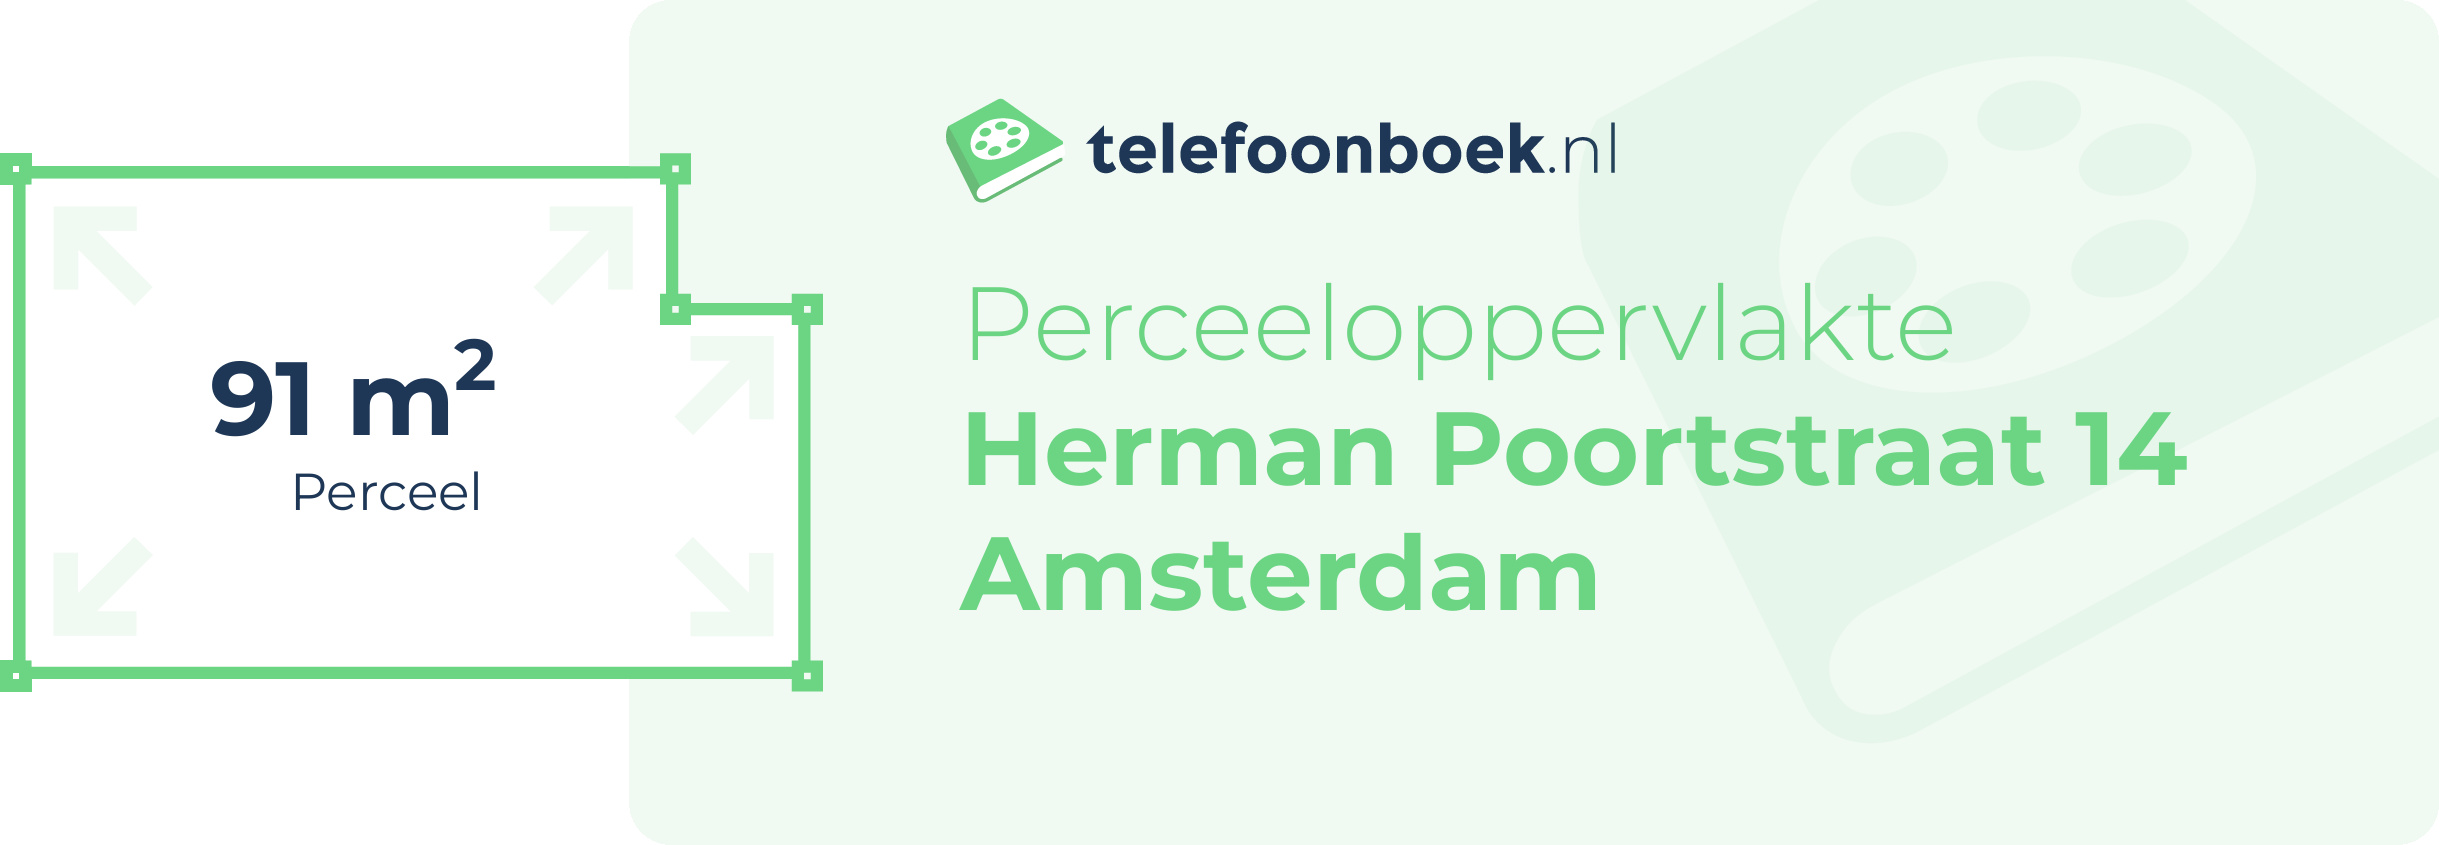 Perceeloppervlakte Herman Poortstraat 14 Amsterdam